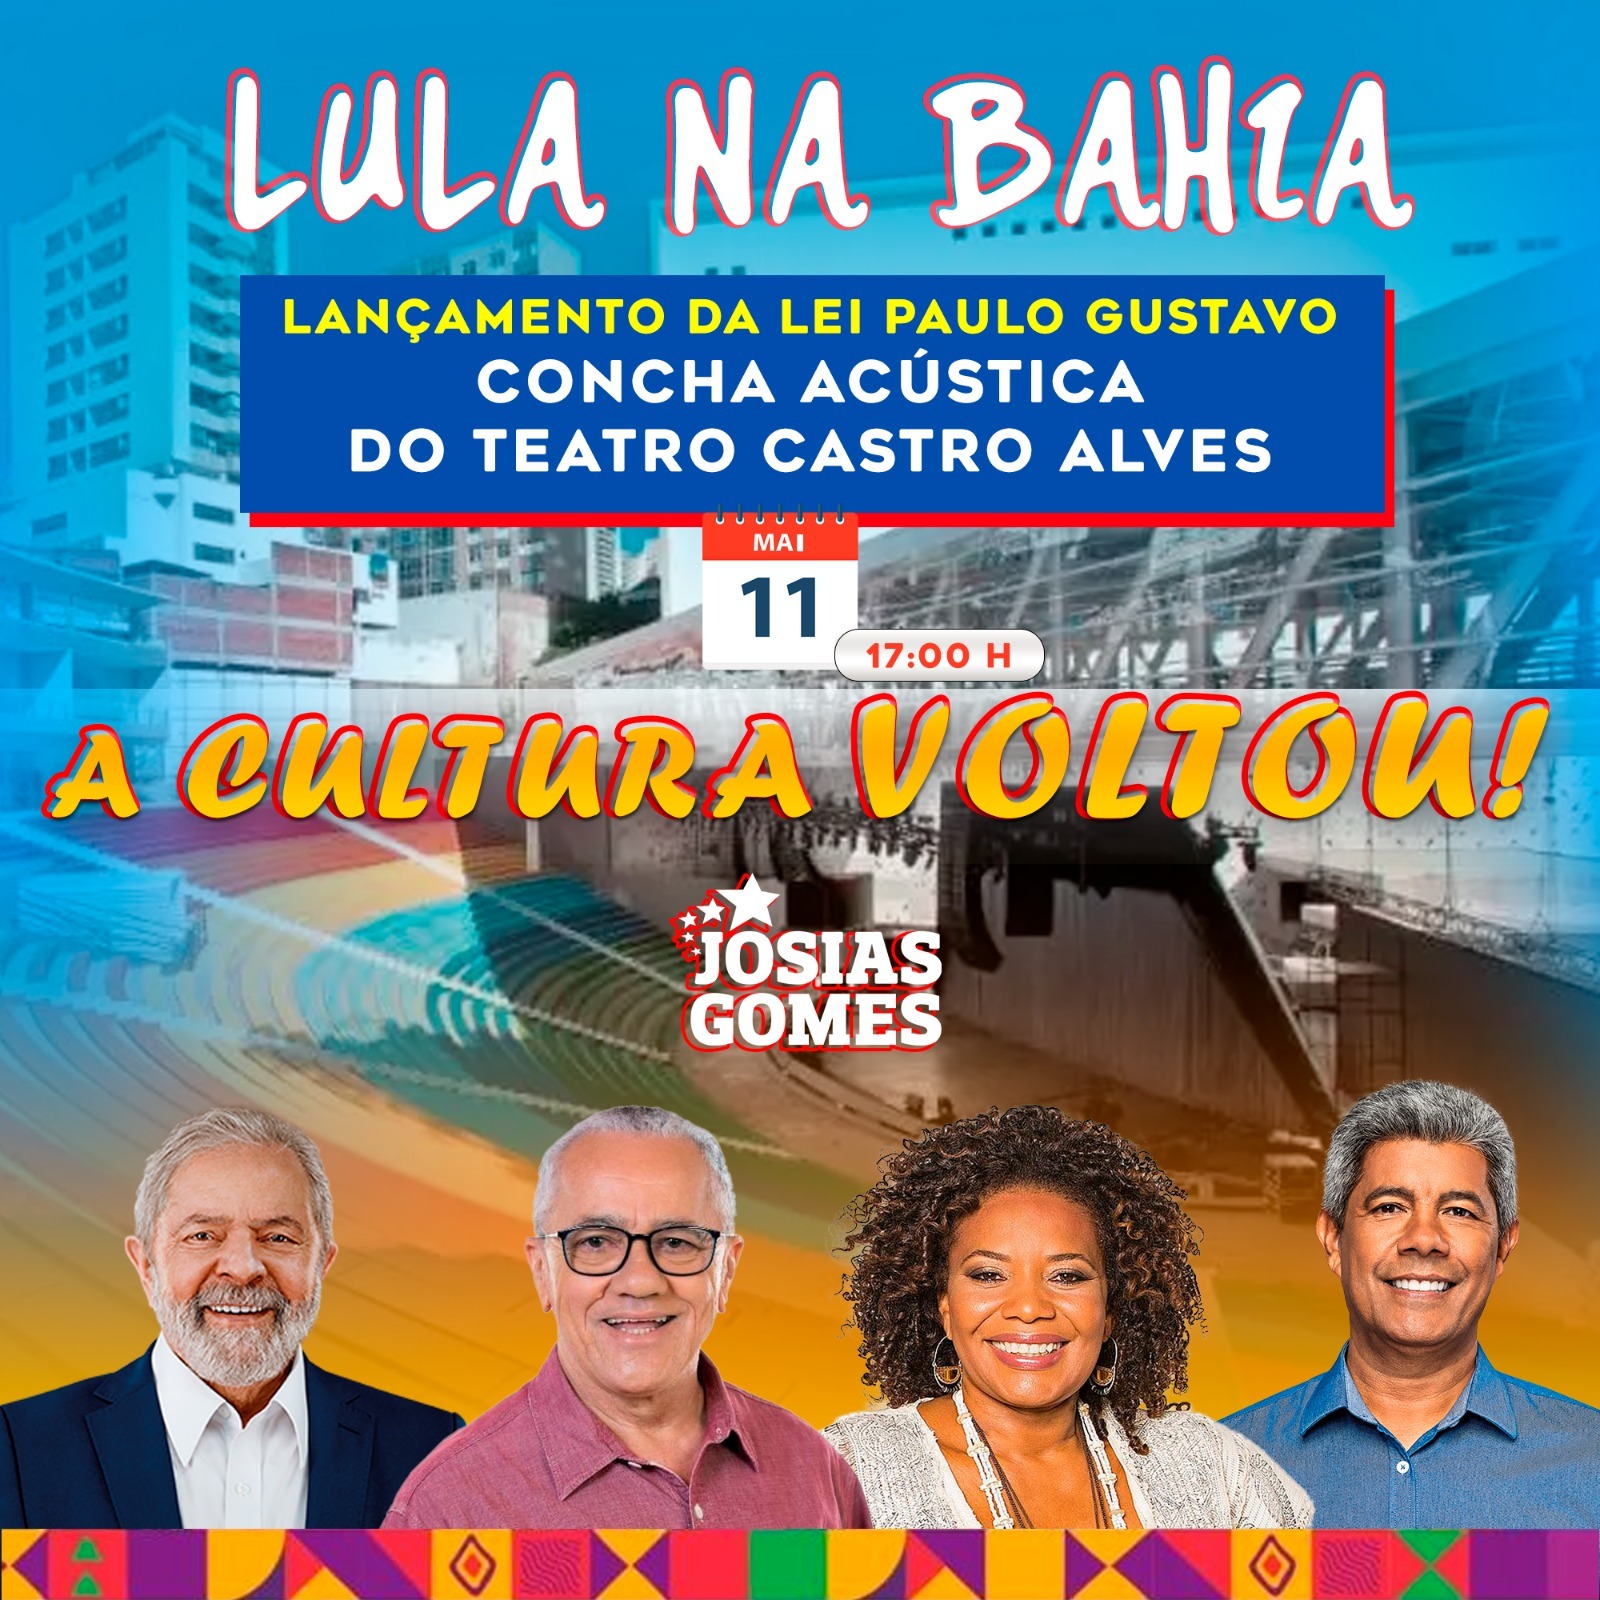 Amanhã é Dia De Lula Na Bahia!